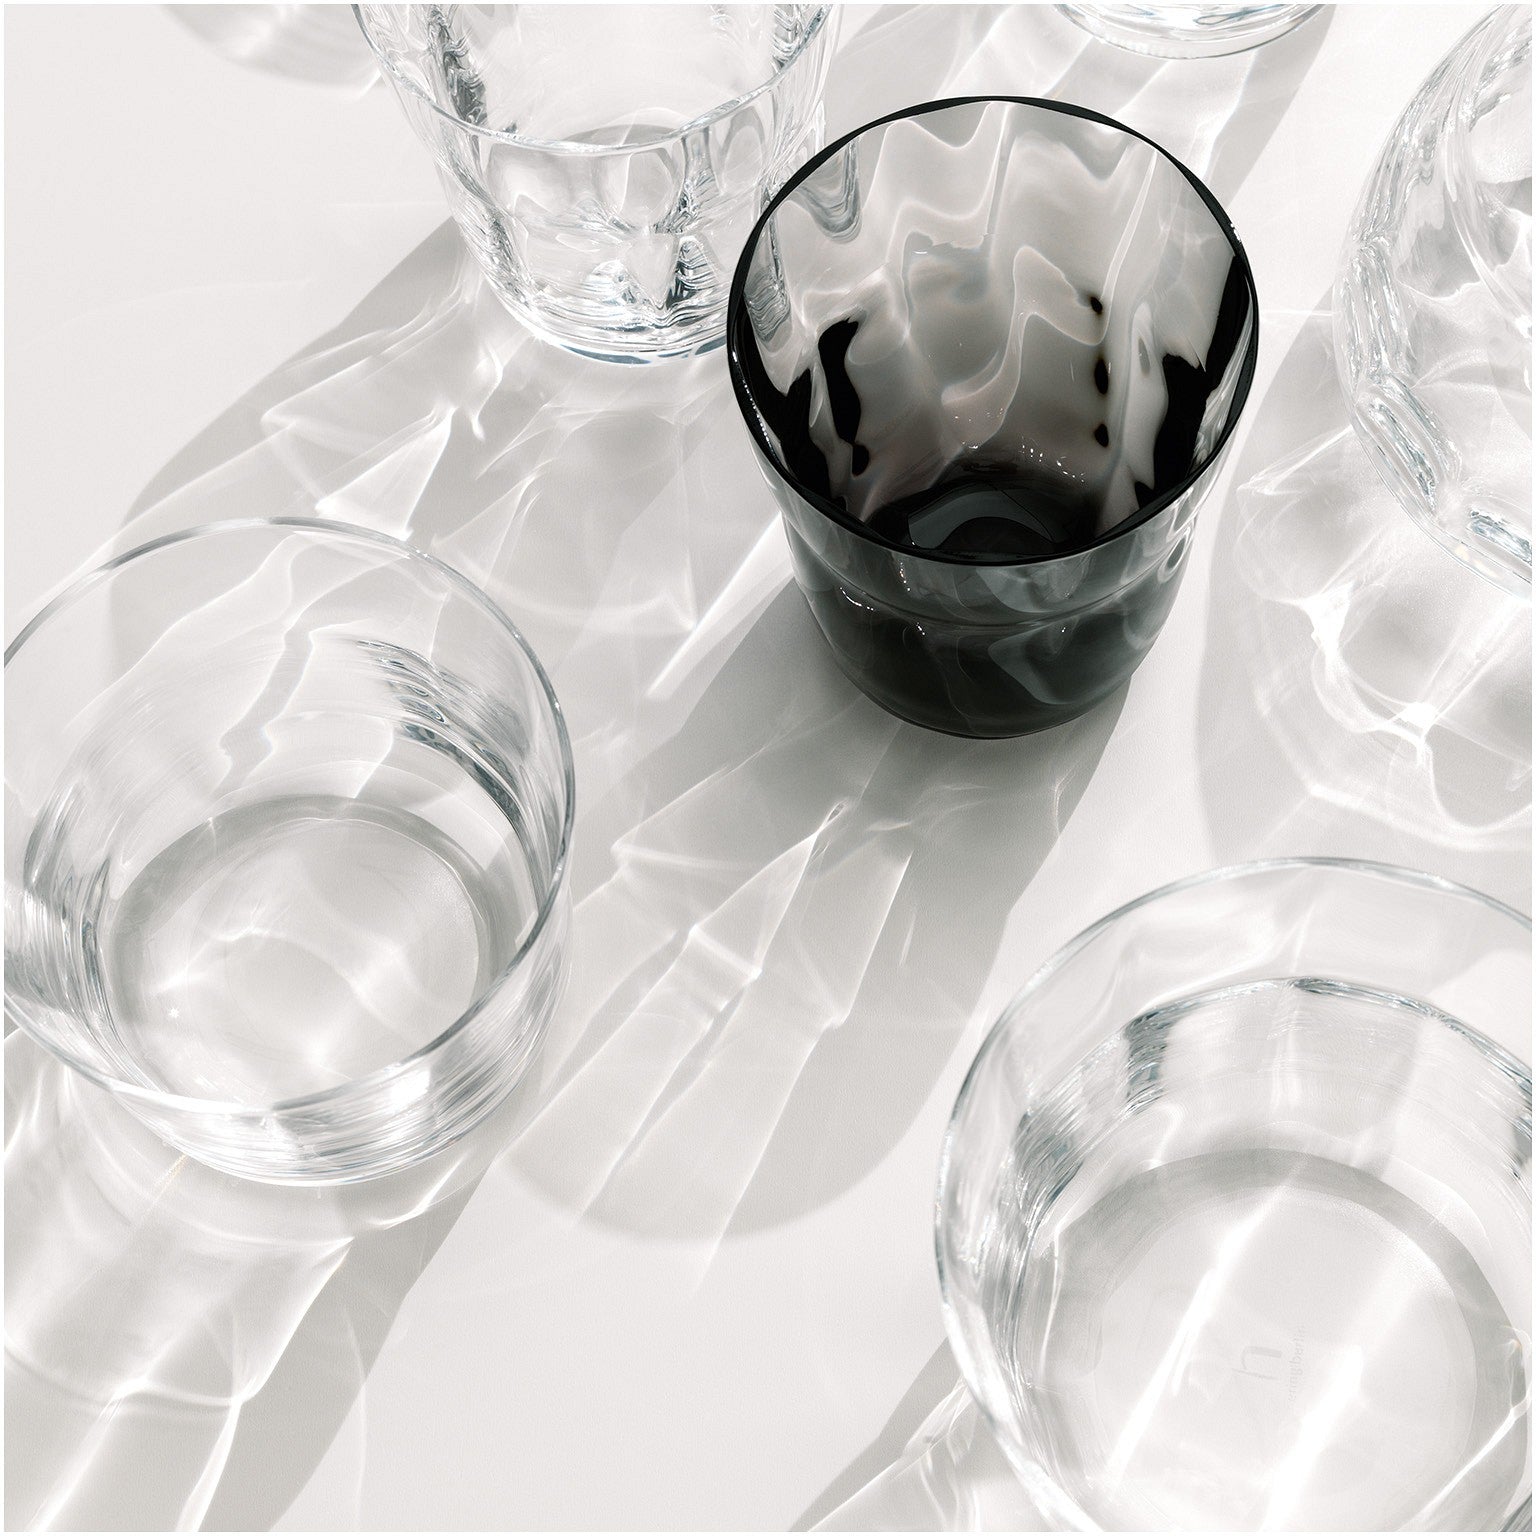 Mehrere transparente Glasgefäße sind auf einer lichtreflektierenden Oberfläche angeordnet, wobei das Lichtspiel komplizierte Schatten wirft, und eine dunkel getönte Glasschale sticht unter den klaren hervor.